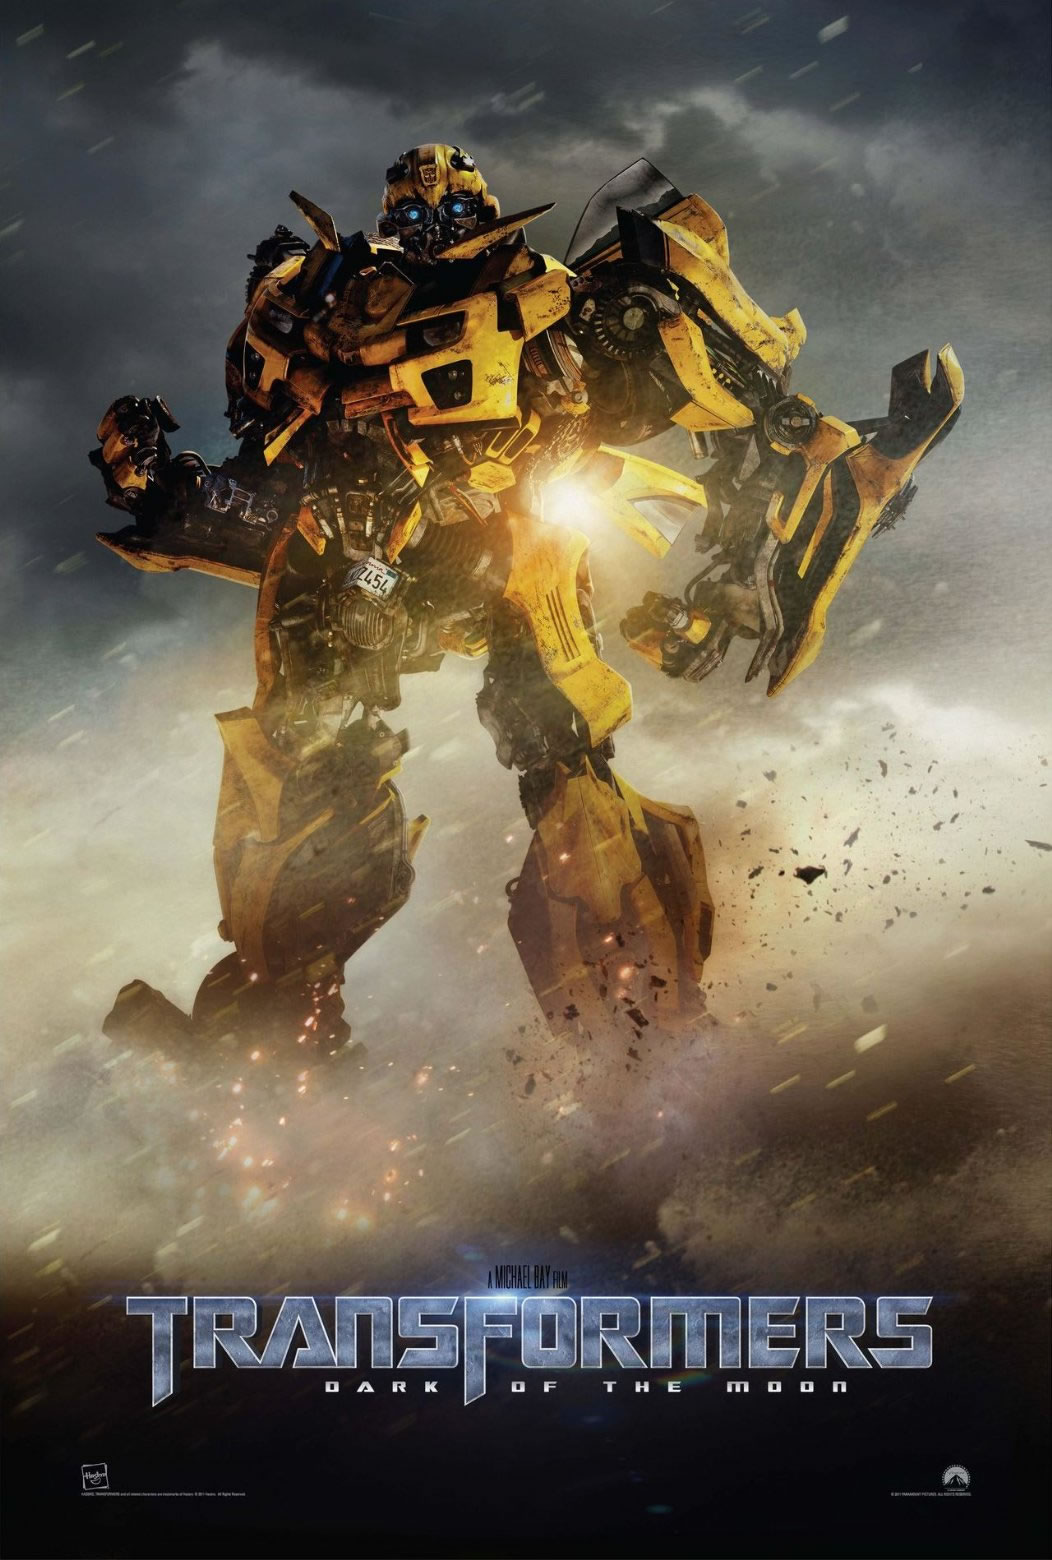 Transformers 3 - O Lado Oculto da Lua - Trailer Dublado - Vídeo